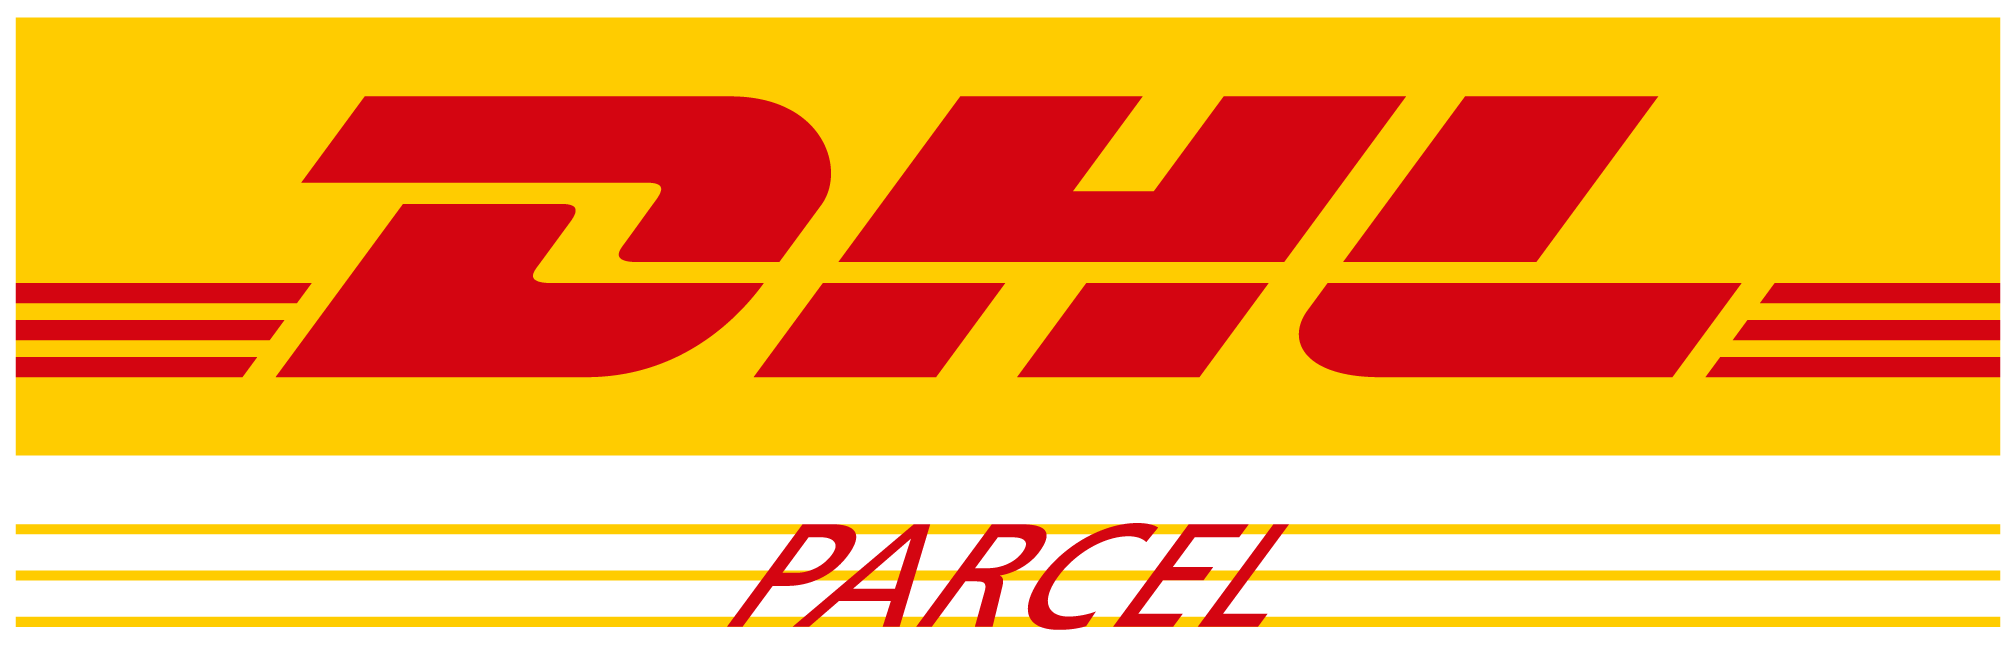 5-DHL-Parcel-logo.png